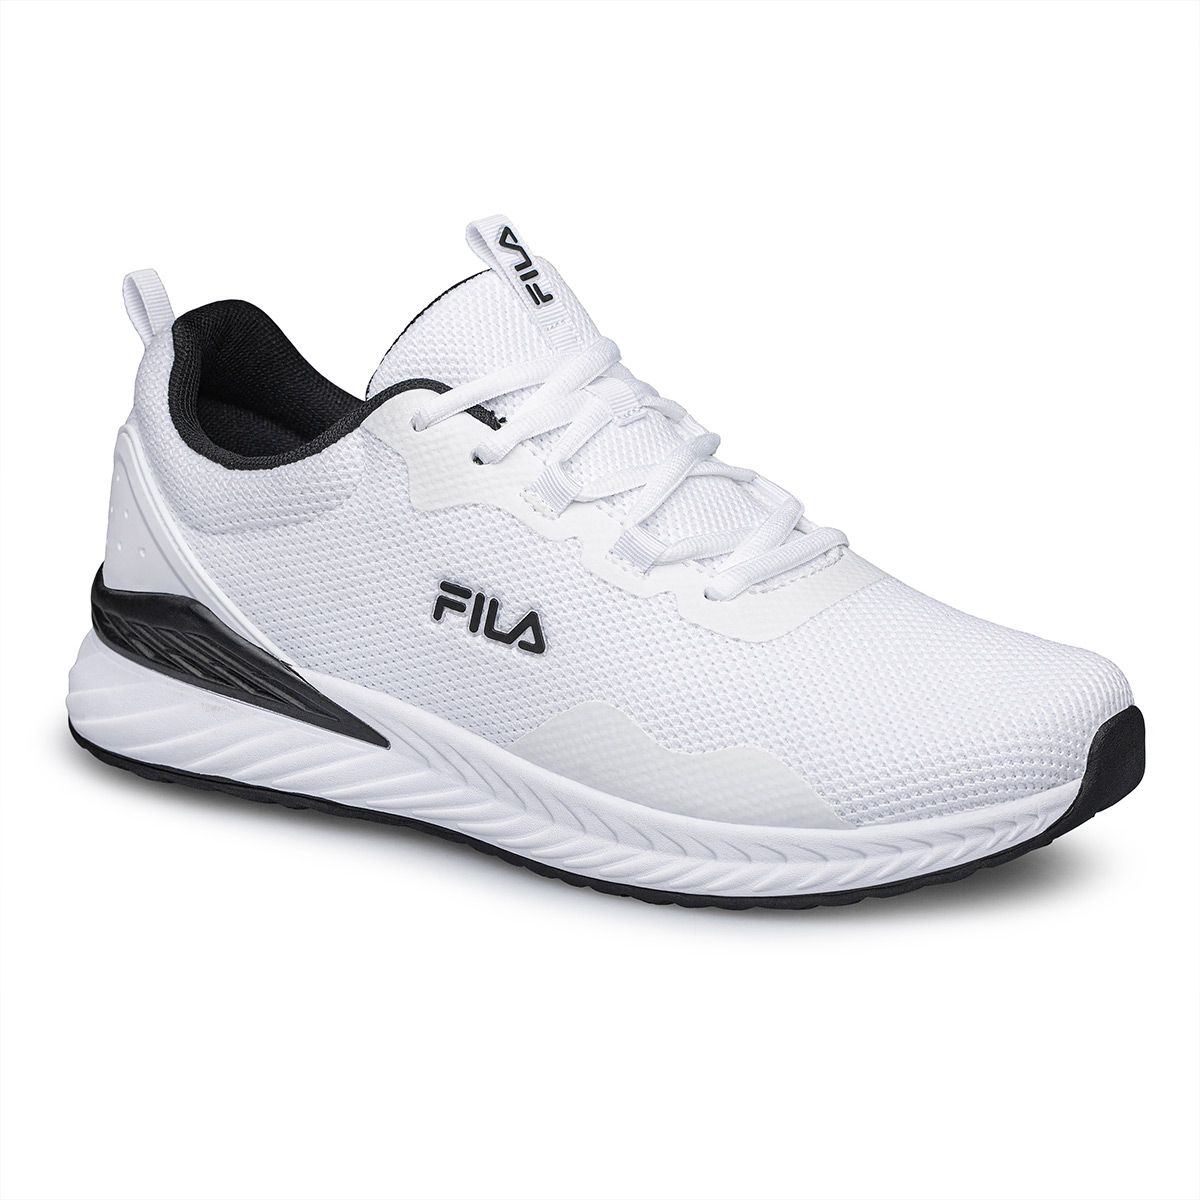 Fila Memory Emerald Men's Running Shoes 1AF21031-100